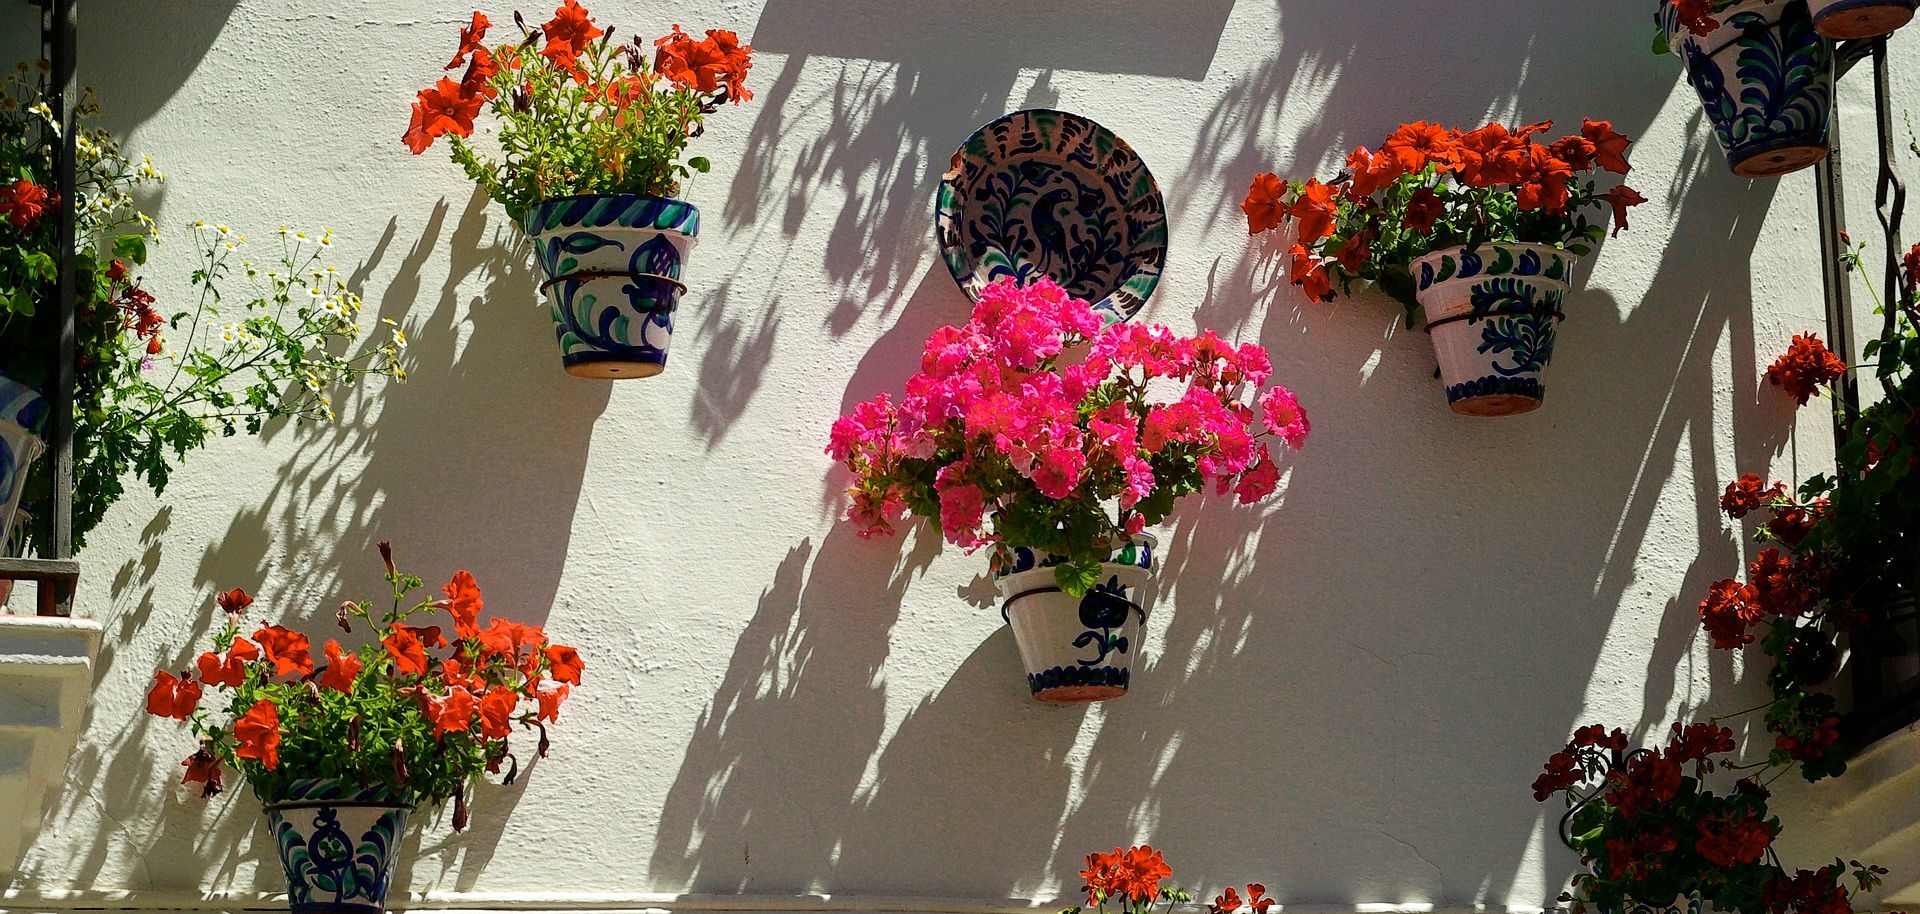 Hoteles Mediterráneo Interior - Siente el color de Andalucía